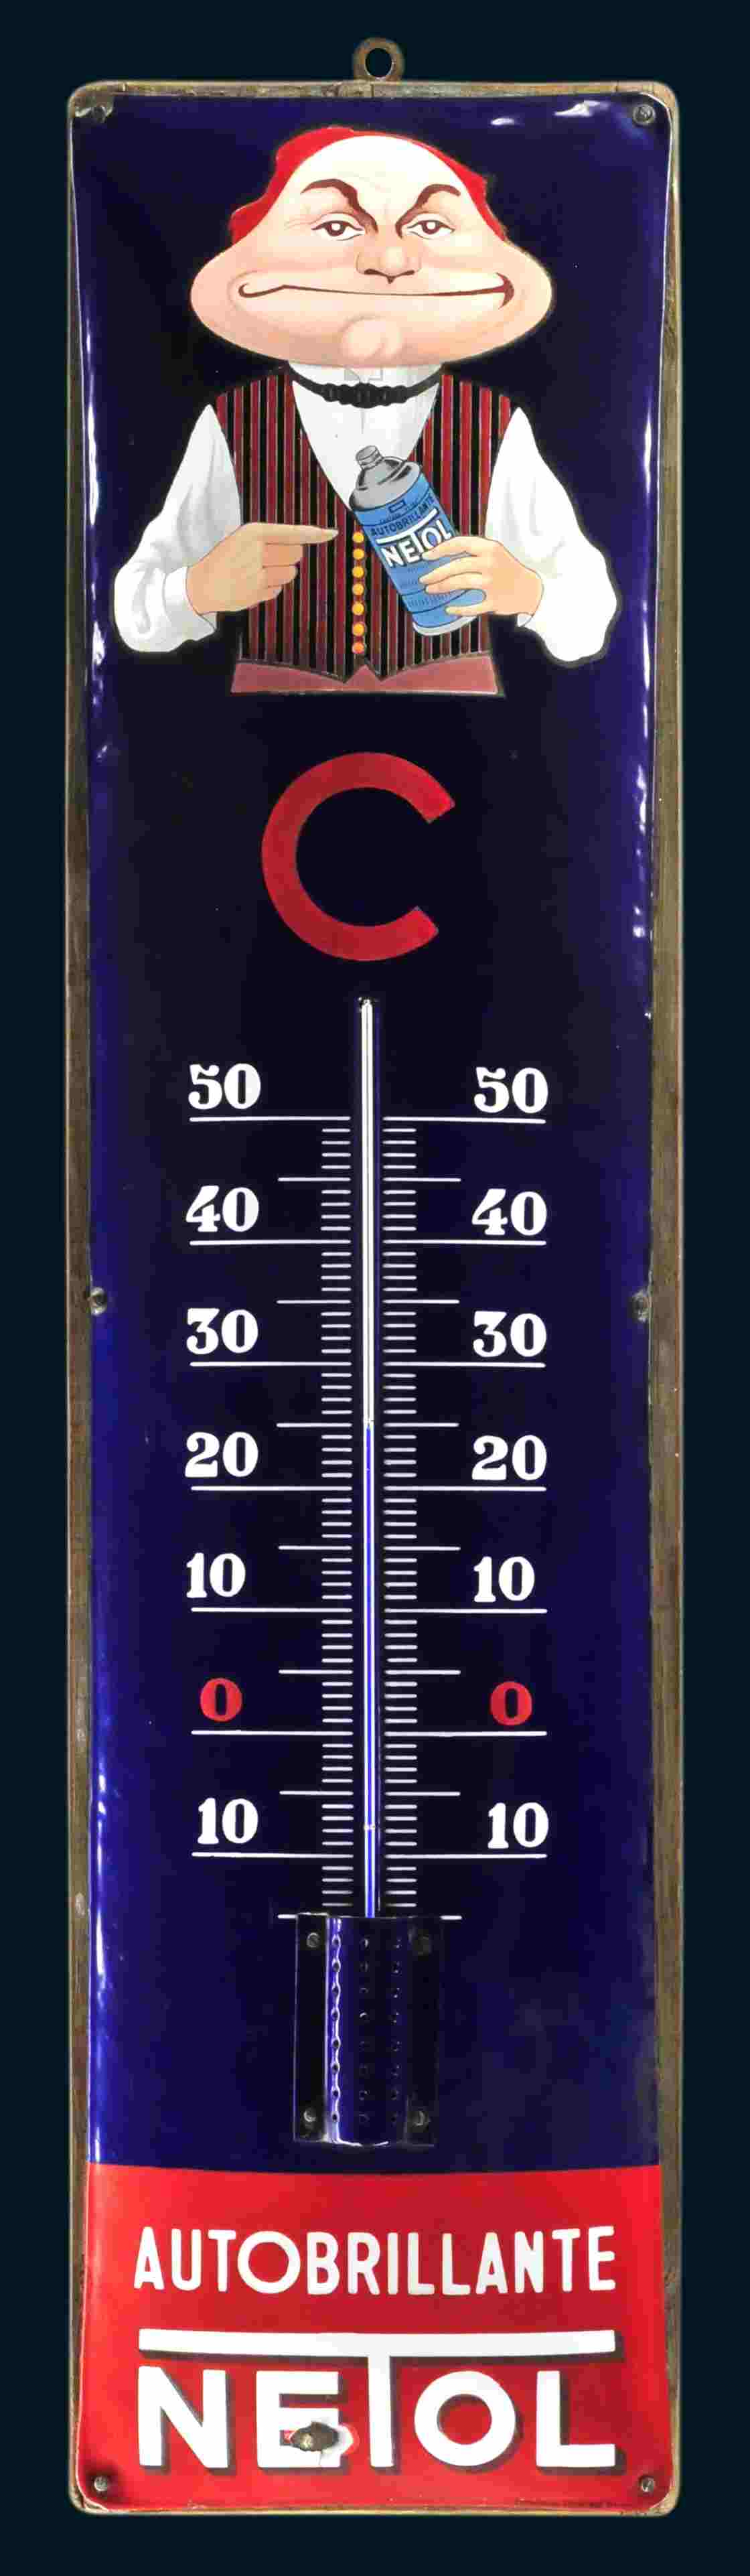 Netol Autobrillante Thermometer 